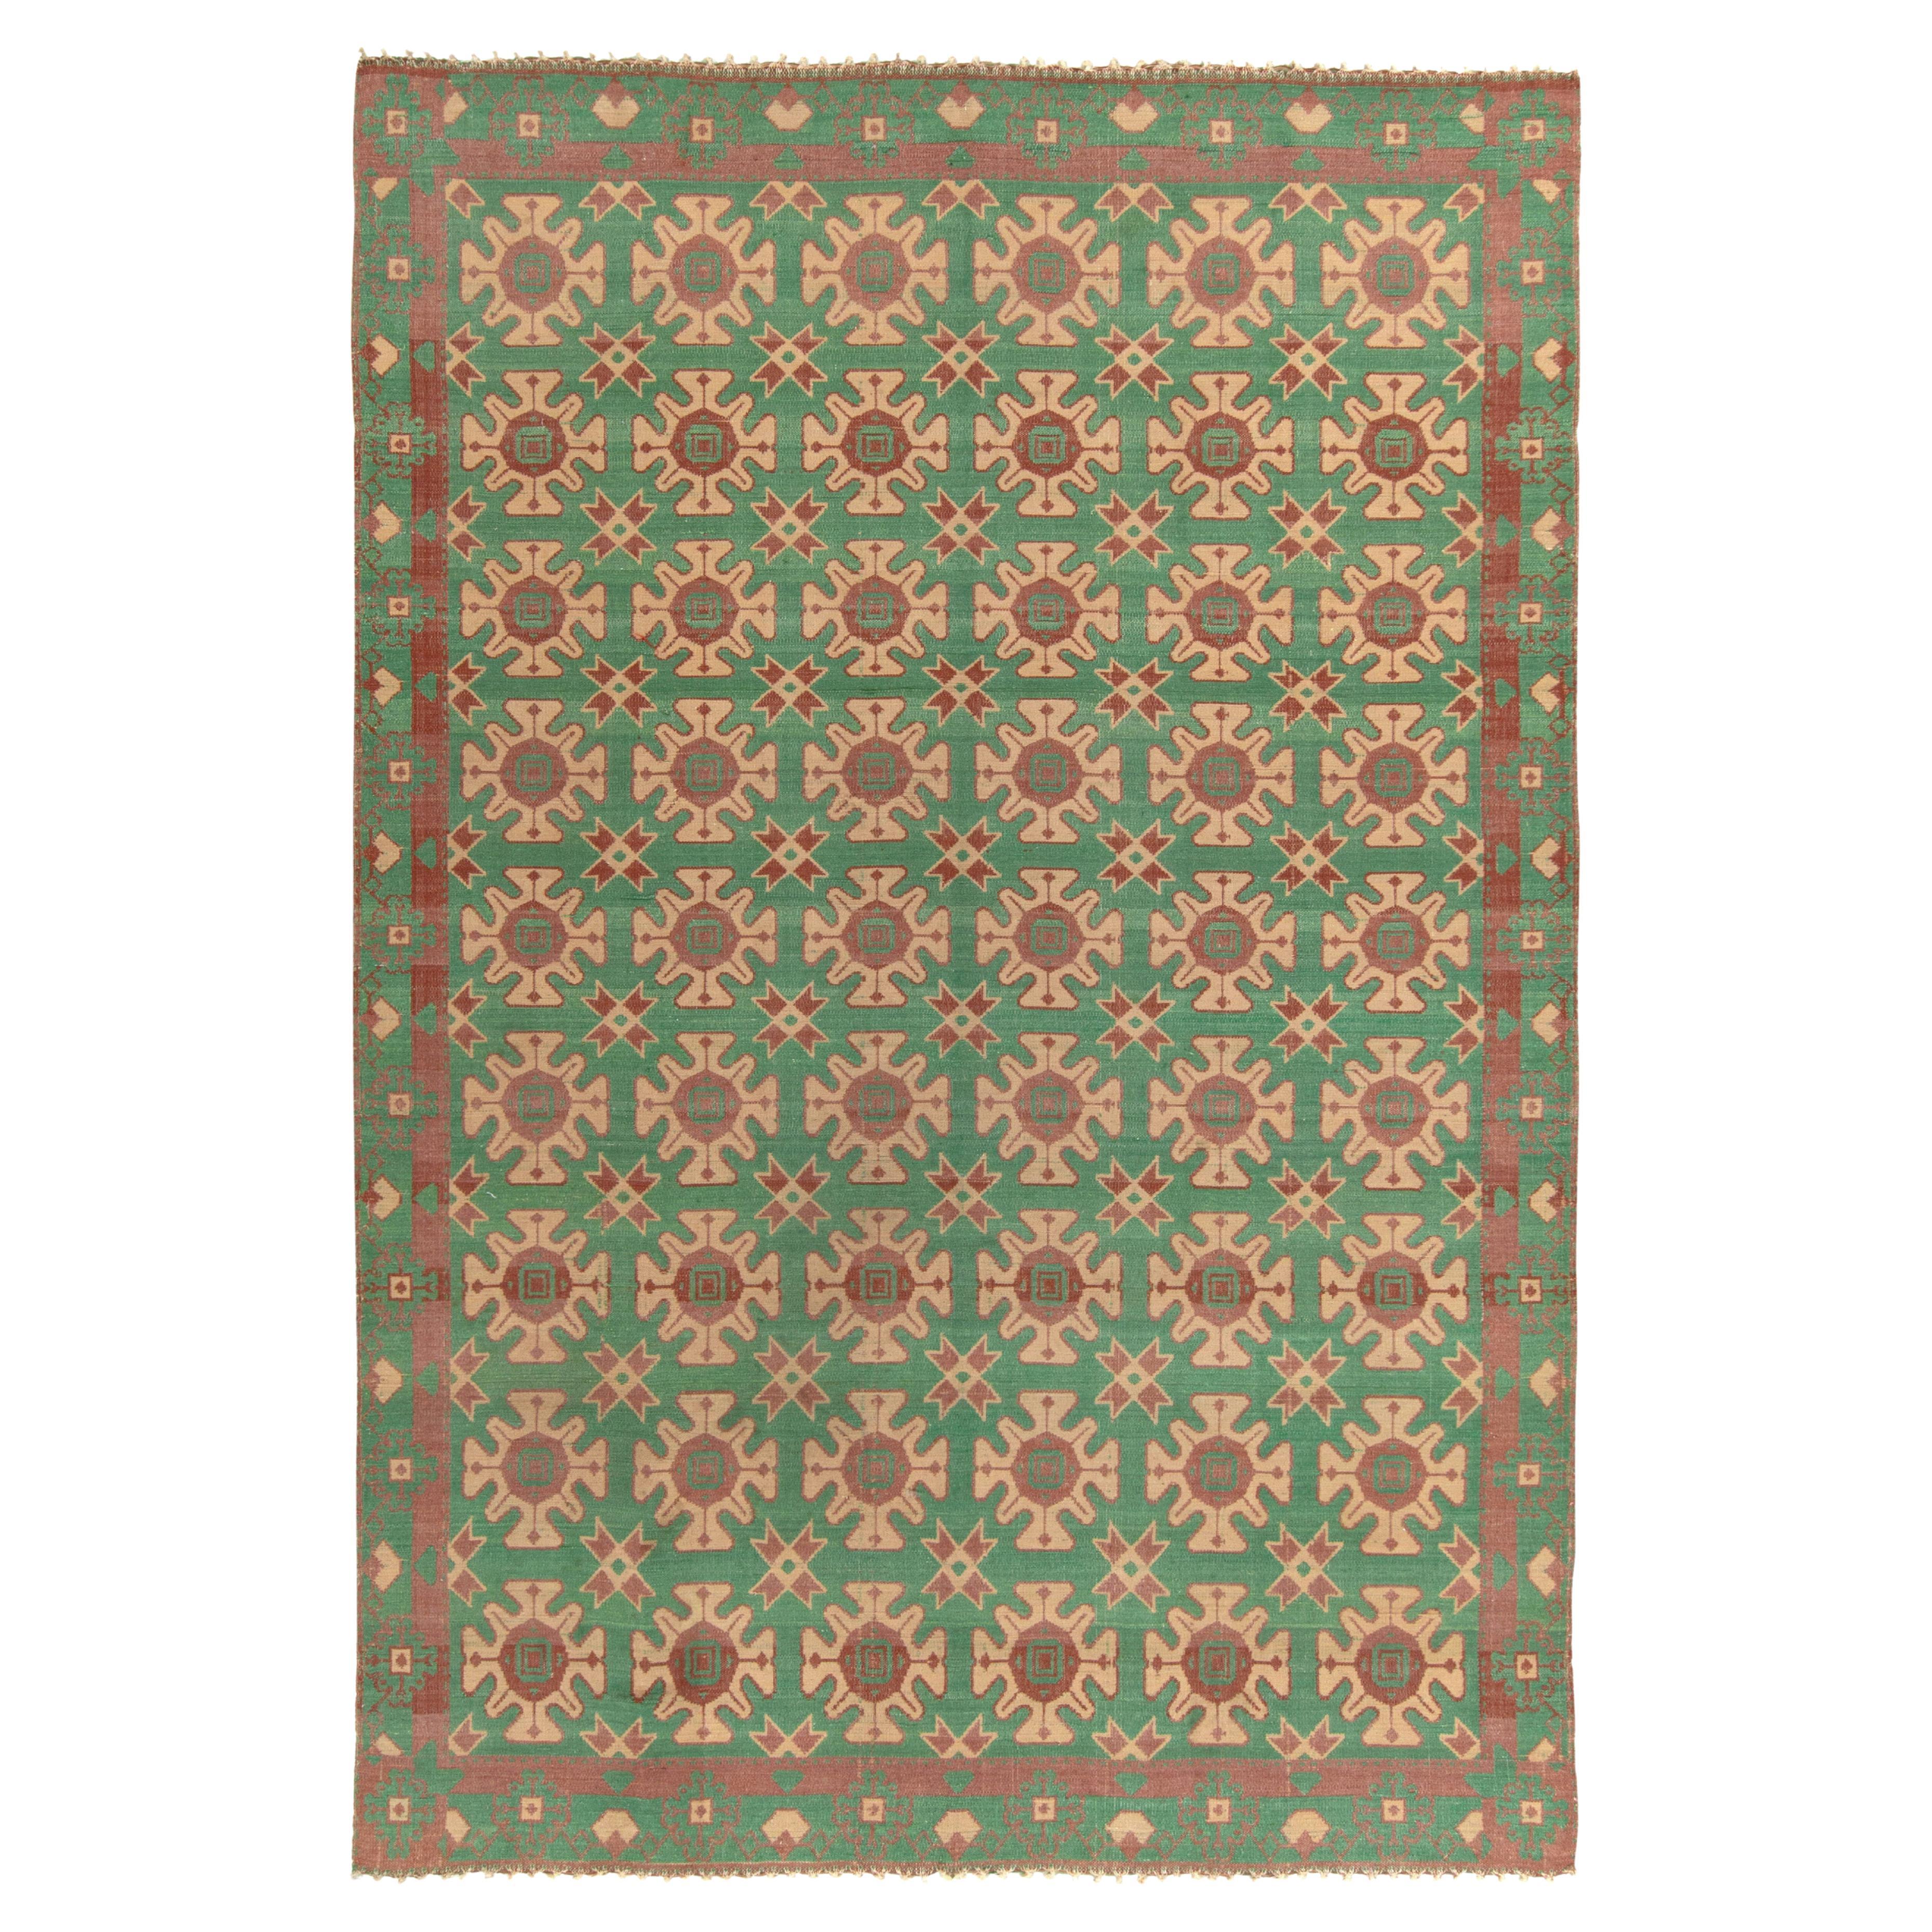 Handwoven Vintage Kilim Rug in Beige, Green Geometric Pattern by Rug & Kilim